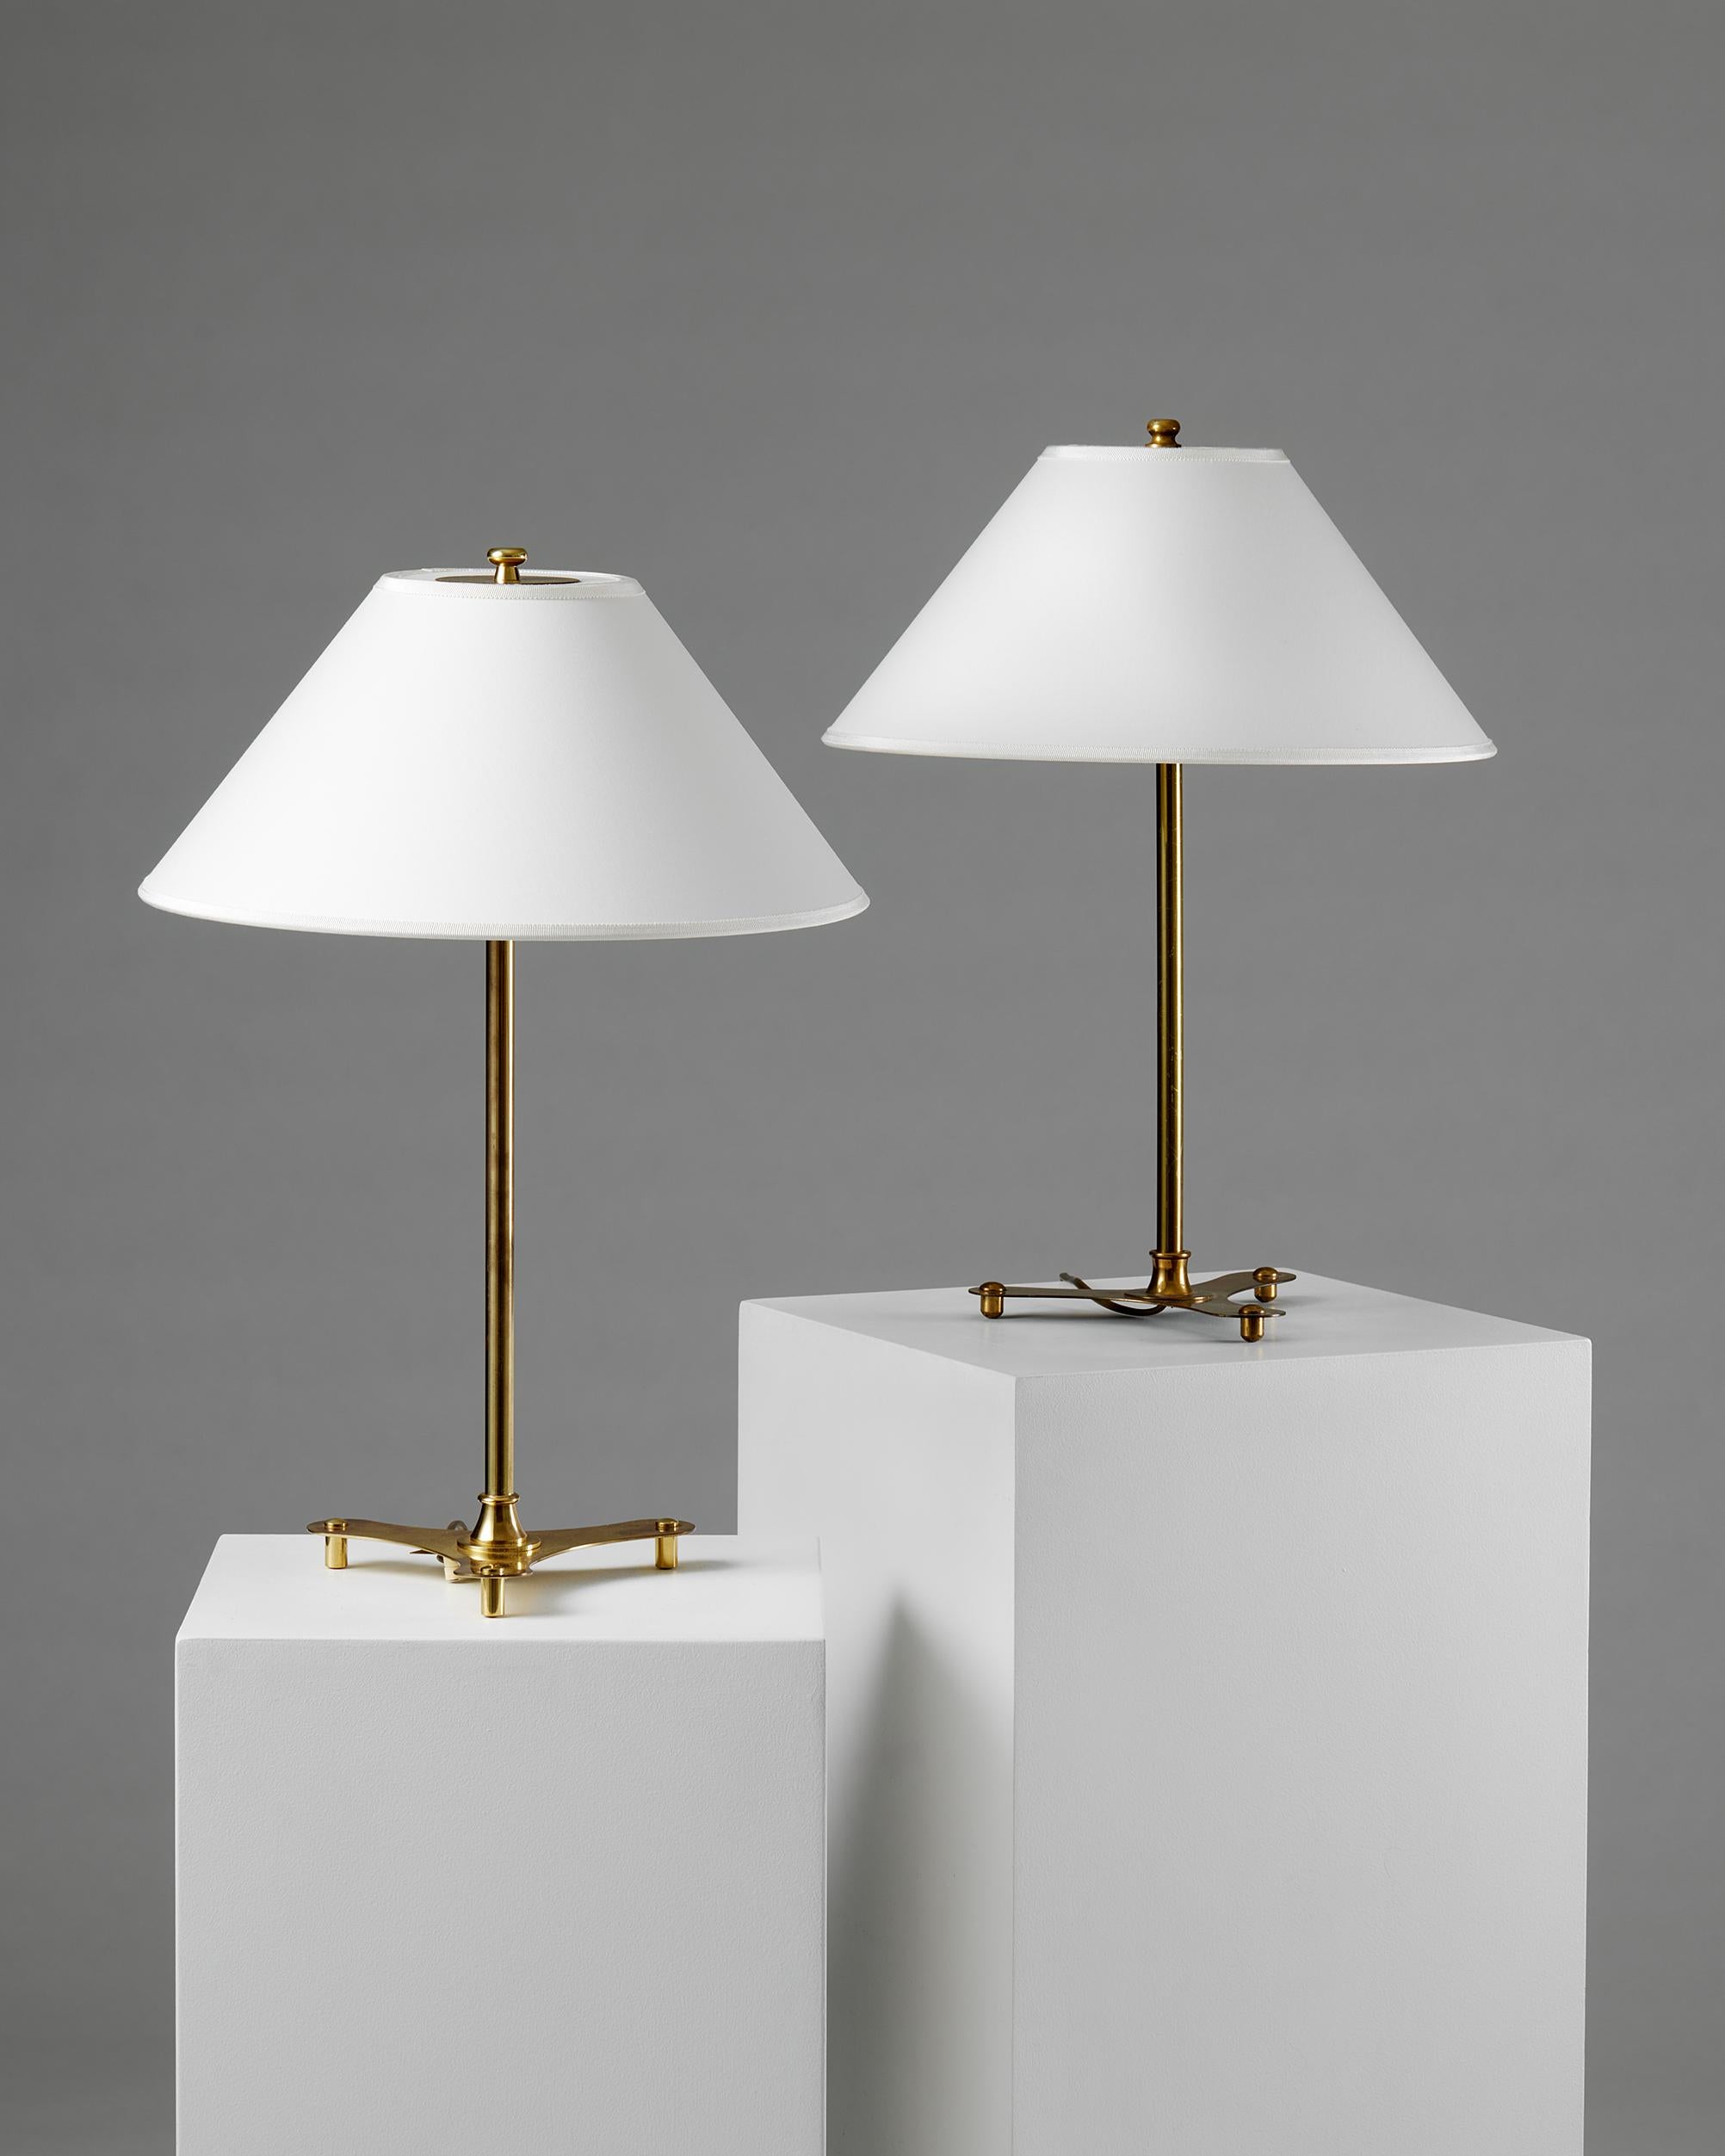 Mid-Century Modern Pair of table lamps model 2552 designed by Josef Frank for Svenskt Tenn, 1950s